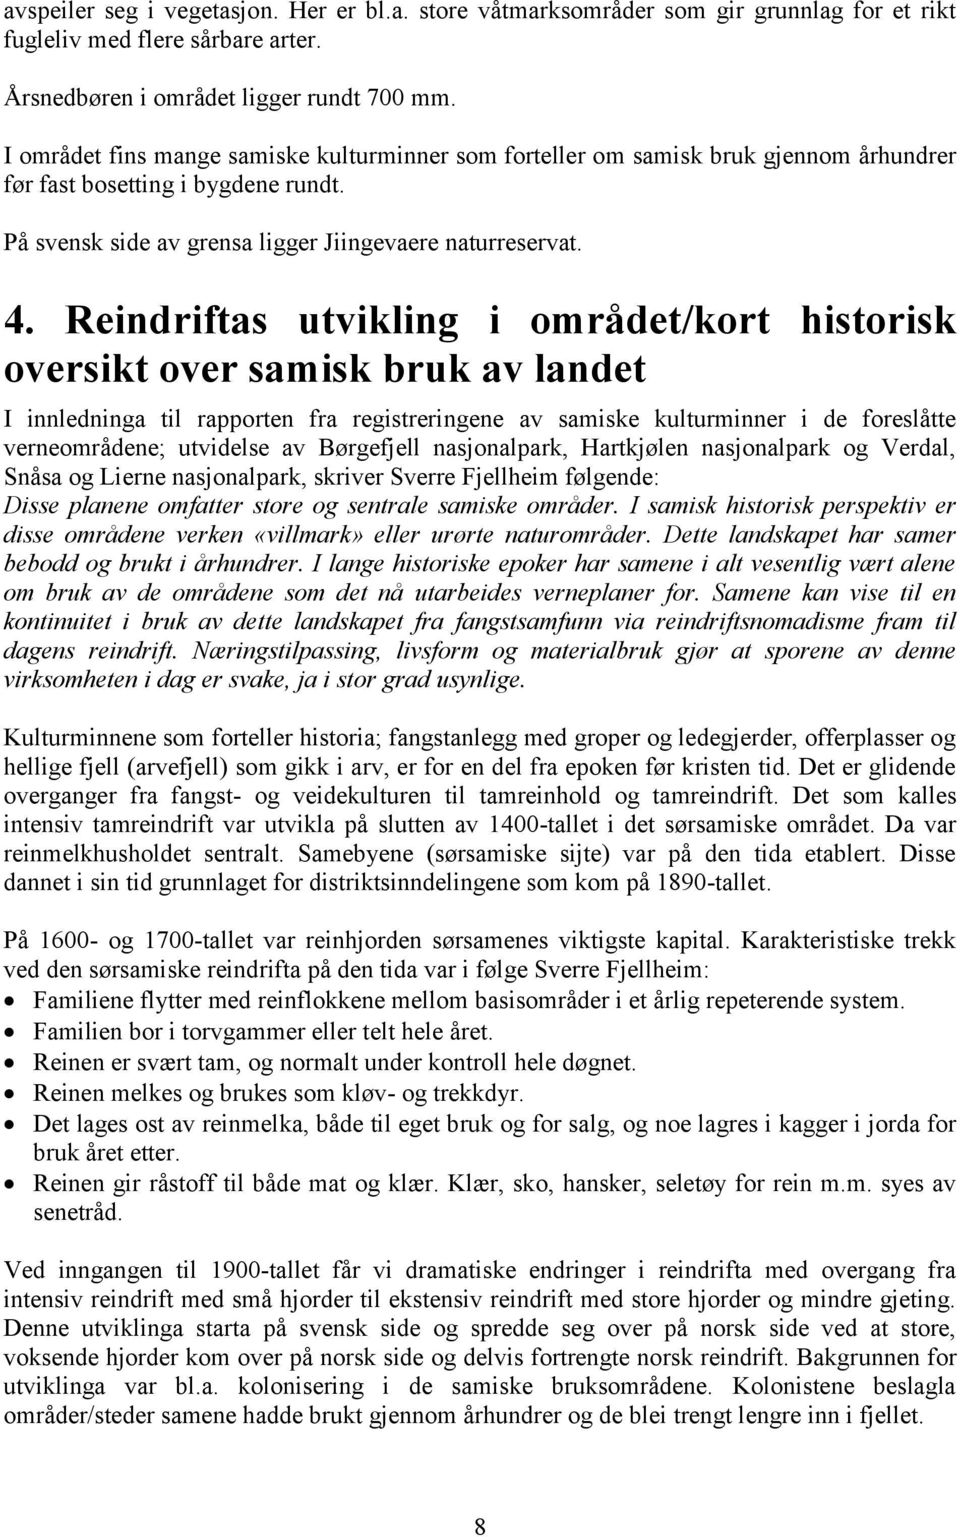 Reindriftas utvikling i området/kort historisk oversikt over samisk bruk av landet I innledninga til rapporten fra registreringene av samiske kulturminner i de foreslåtte verneområdene; utvidelse av